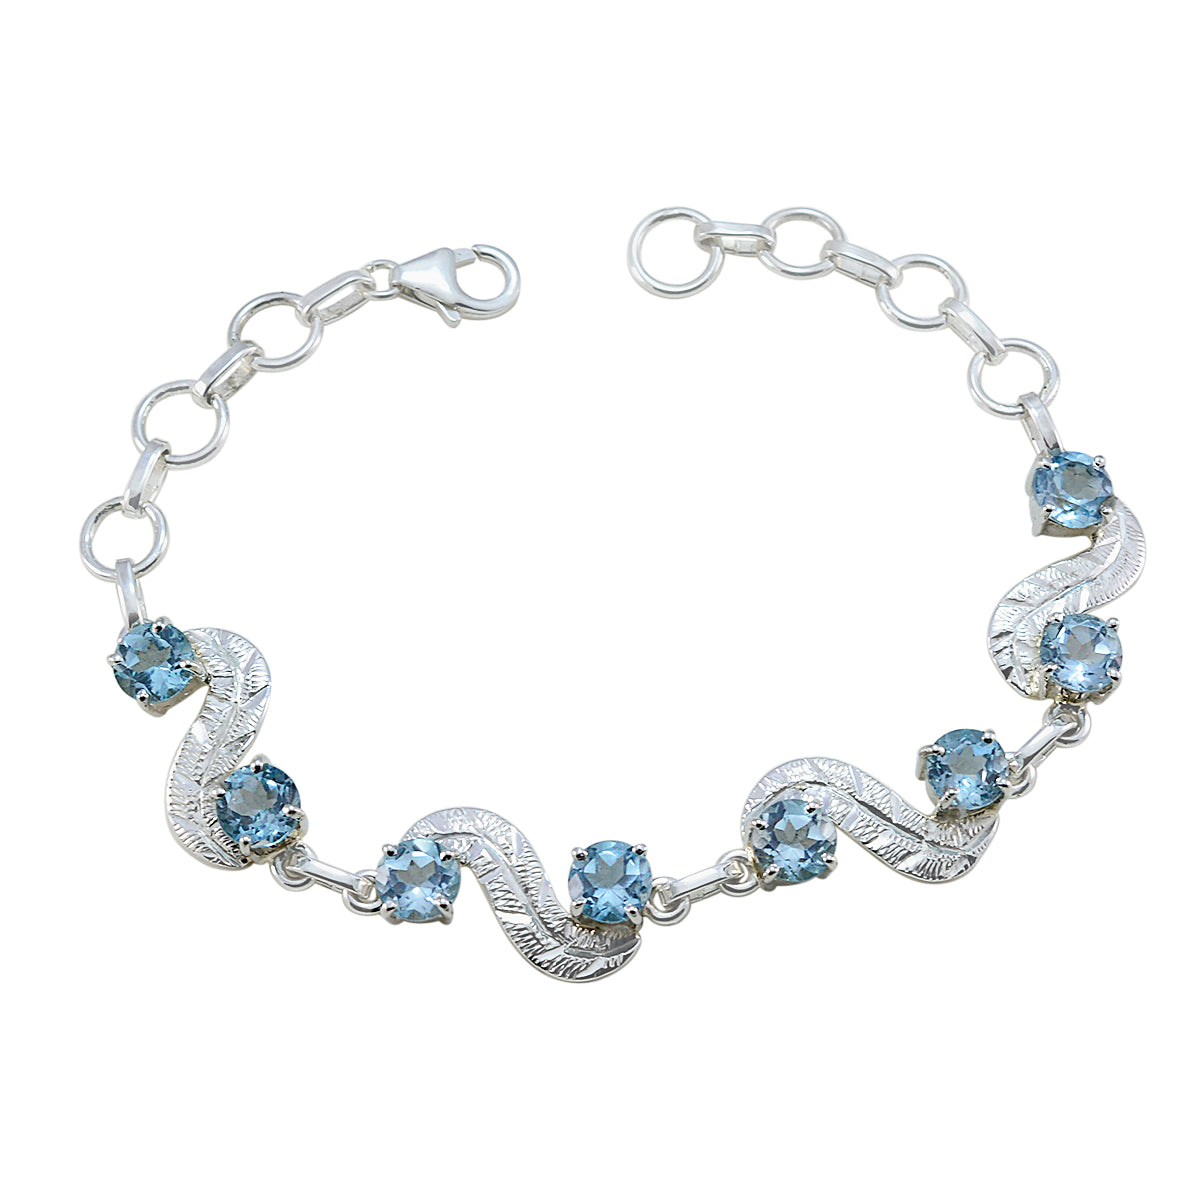 Riyo bezauberndes 925er Sterlingsilber-Armband für Damen, blaues Topas-Armband, Krappenfassung-Armband mit Fischhaken-Gliederarmband, L-Größe 15,2–21,6 cm.